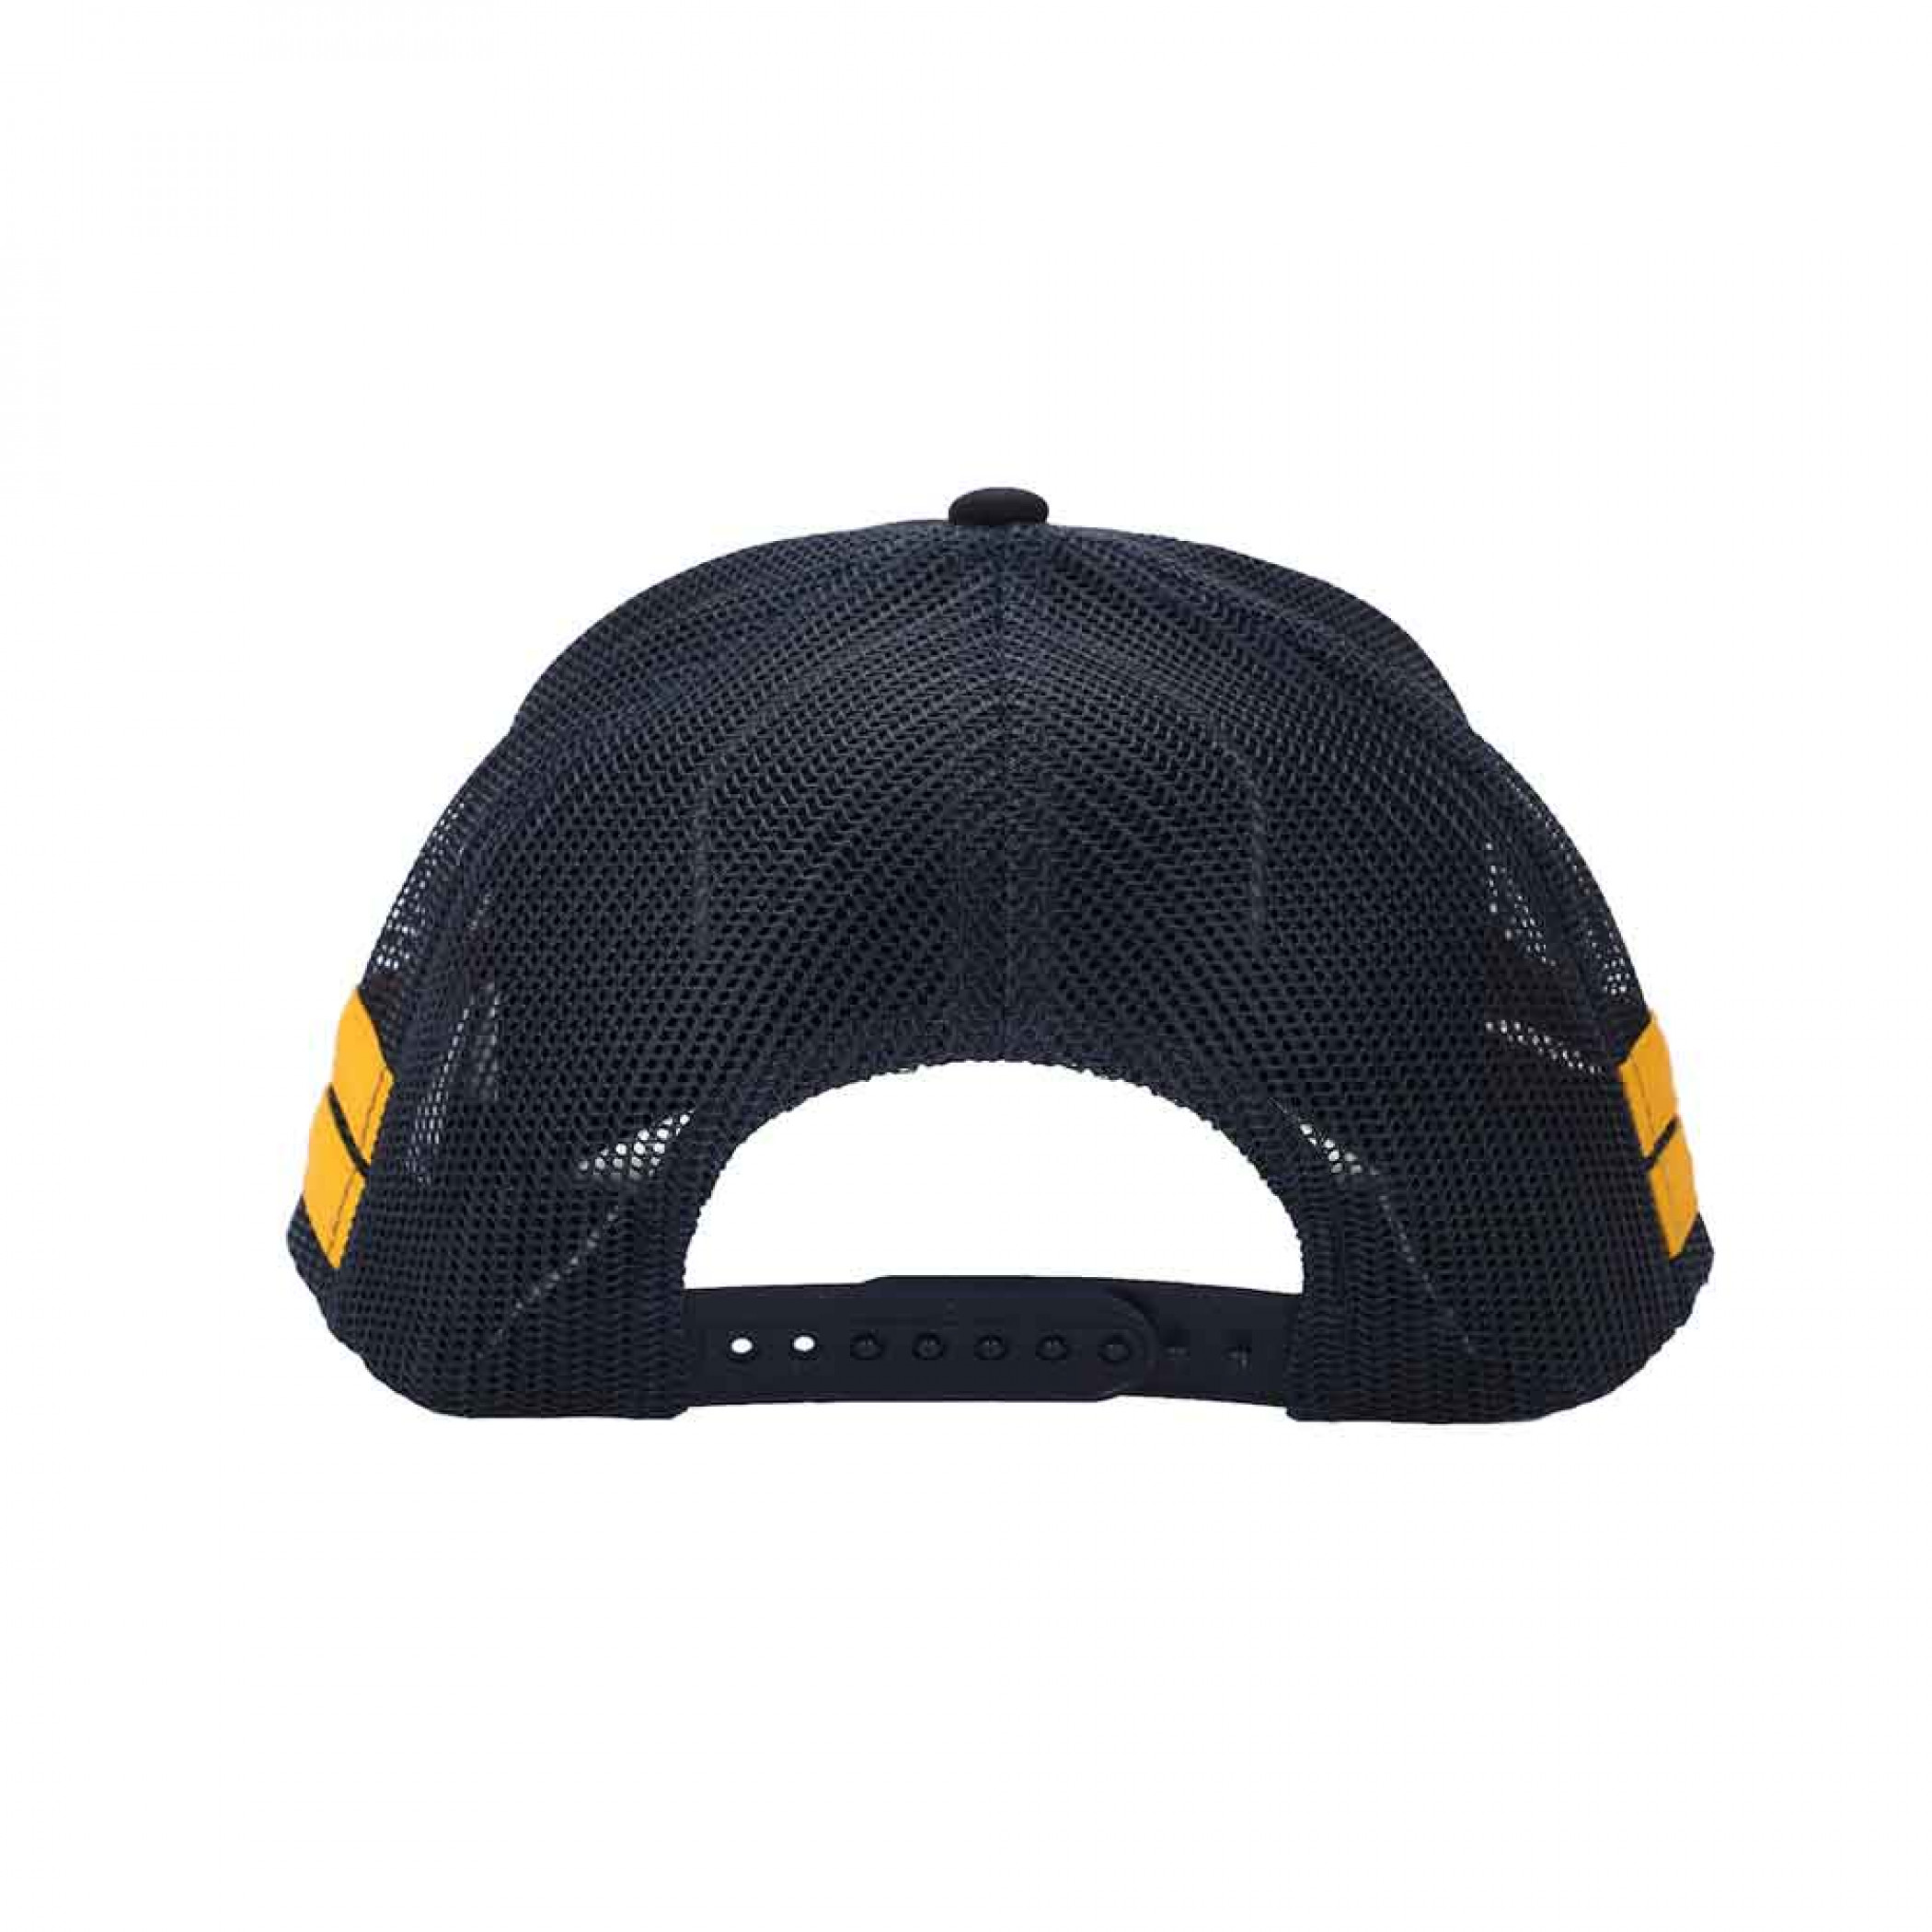 Corona Extra Vintage Logo Snapback Trucker Hat